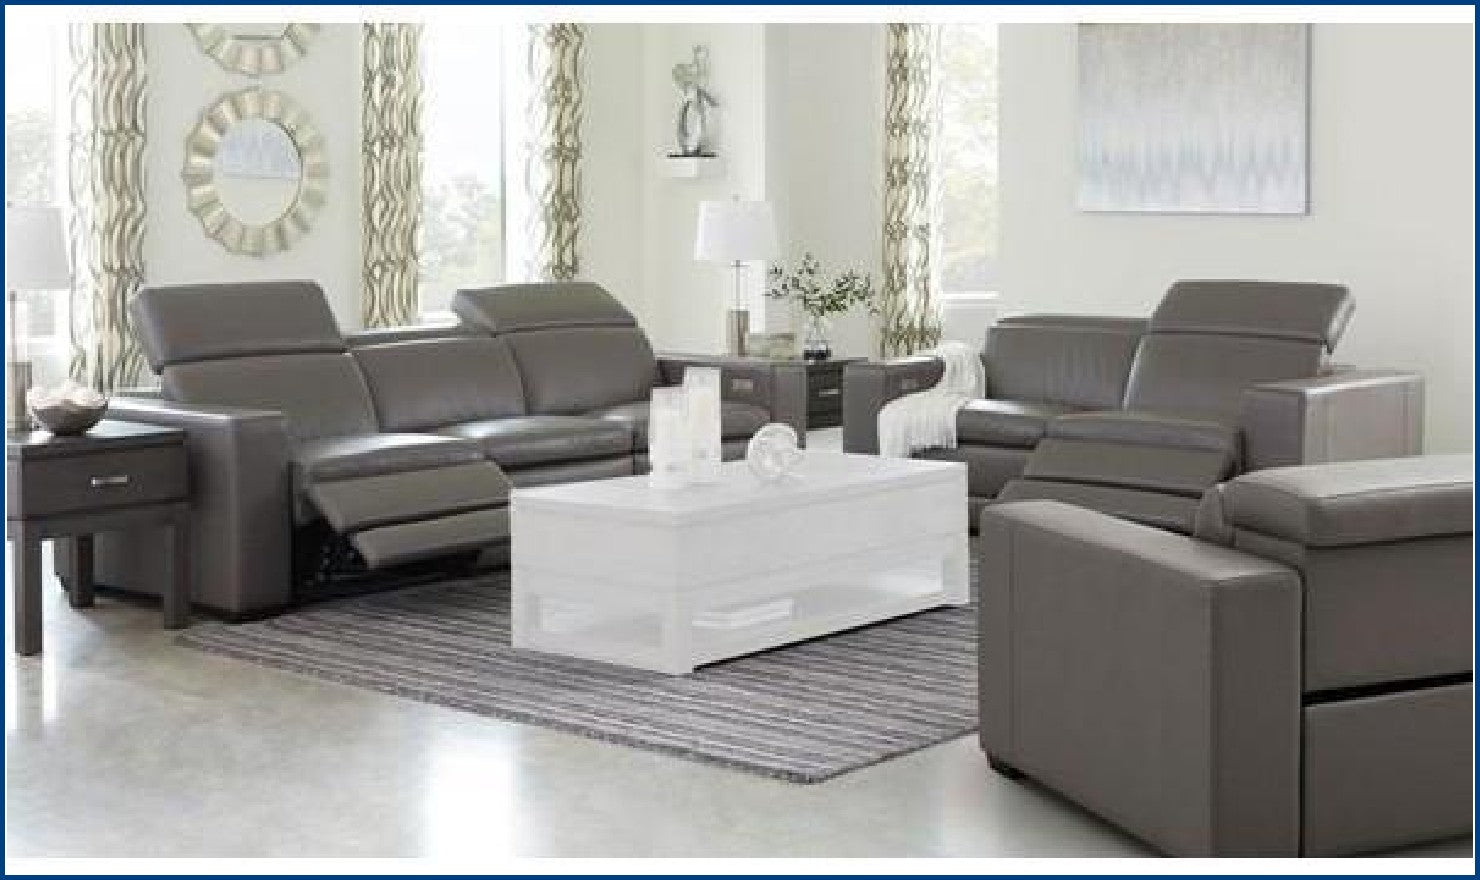 Texline Living Room set-Living Room Sets-Jennifer Furniture